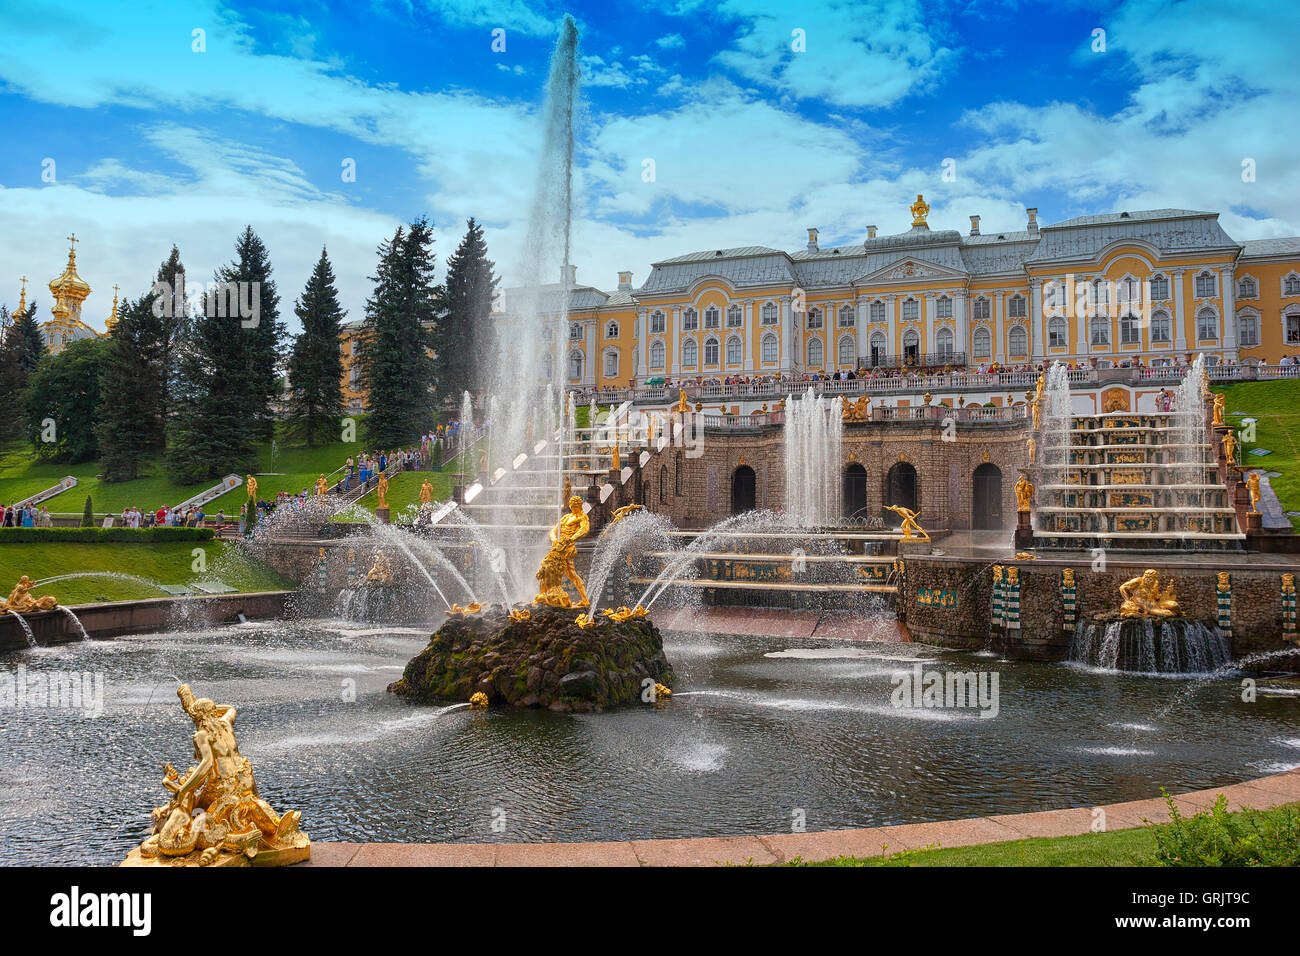 Gärten in Peterhof Palast Peter Palast oder Zar Peter der große im barocken und klassischen Stil in St.Petersburg Russland Stockfoto